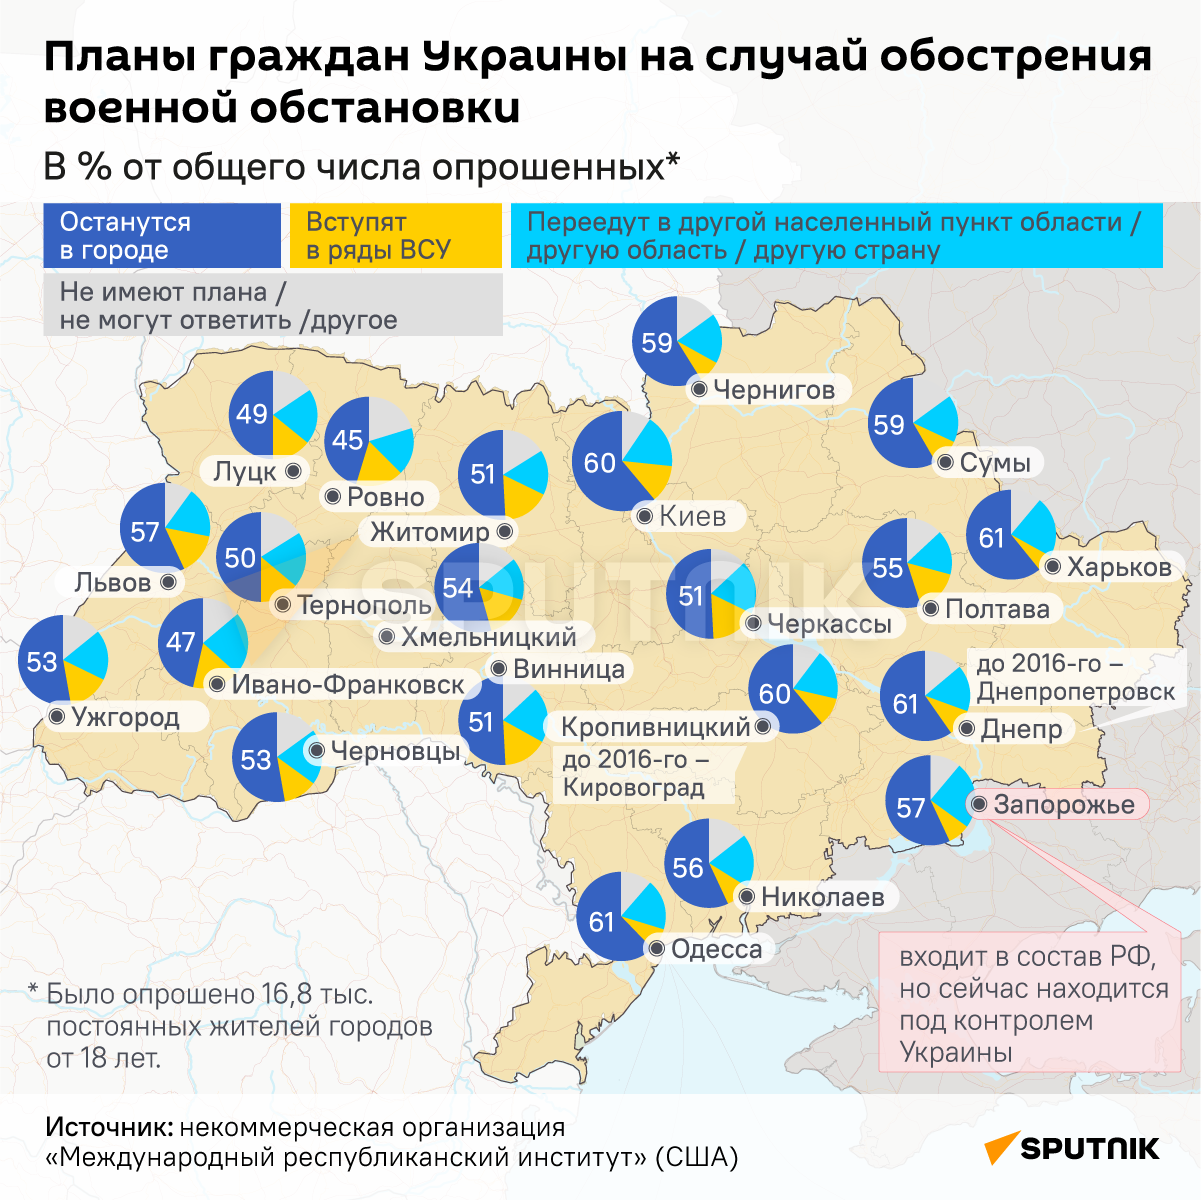 Инфографика: Планы граждан Украины на случай обострения военной обстановки - Sputnik Azərbaycan